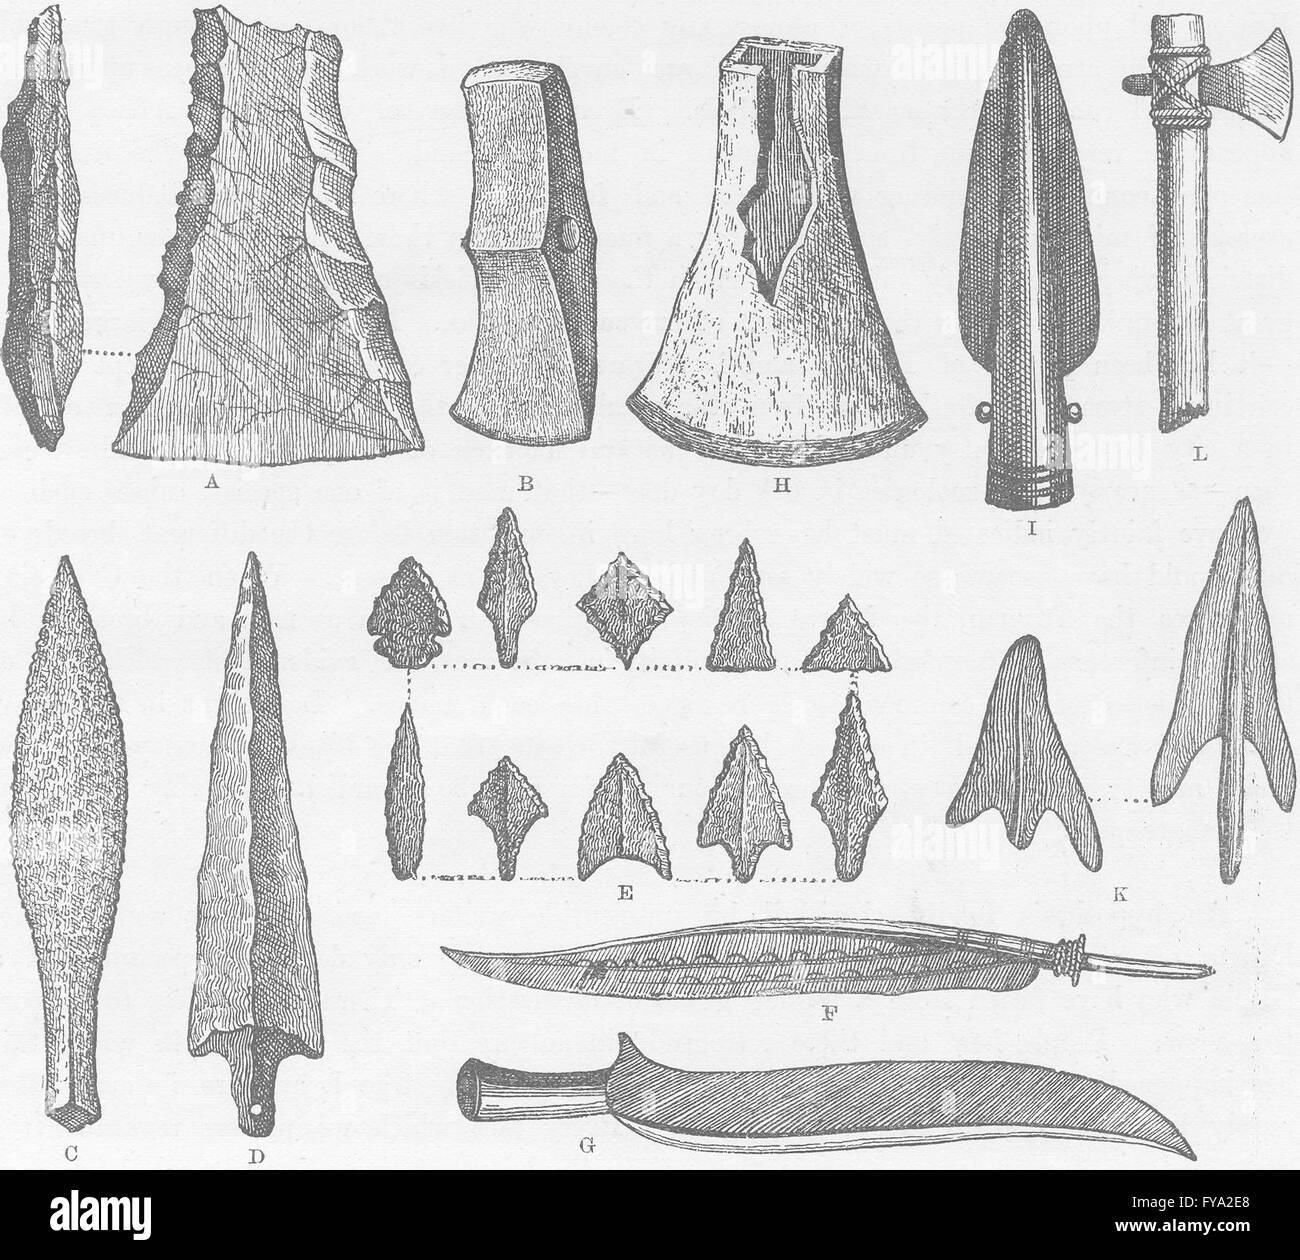 MILITARIA: Rude armi di uomo primitivo antica stampa 1890 Foto Stock